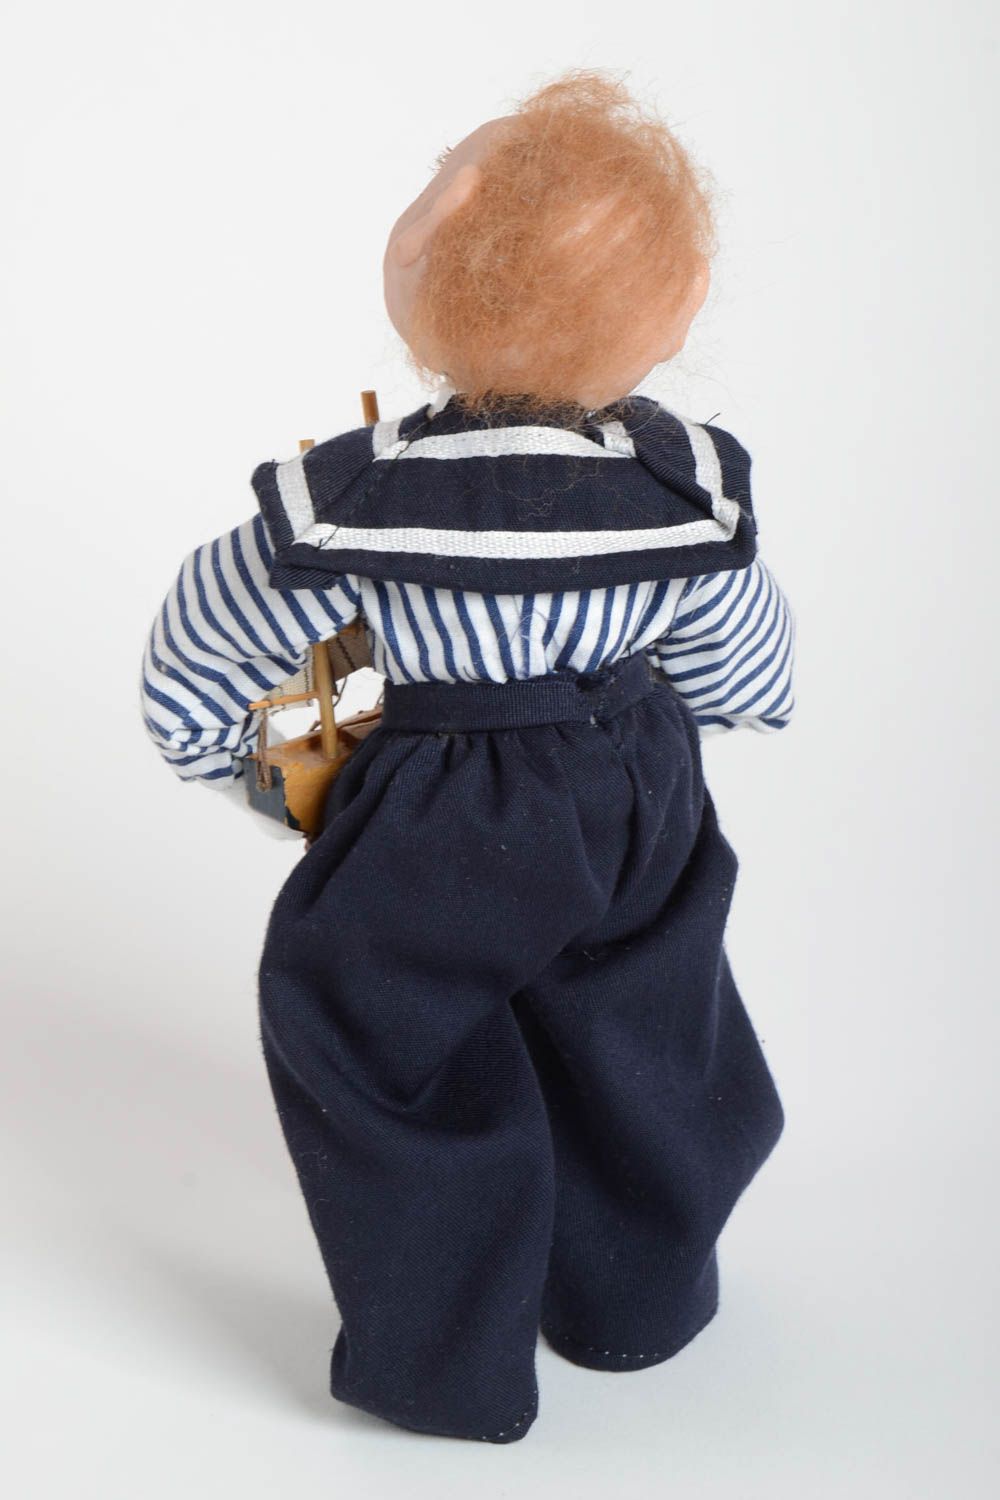 Авторская скульптурная кукла Мальчик в тельняшке с кораблем для декора хенд мейд фото 5